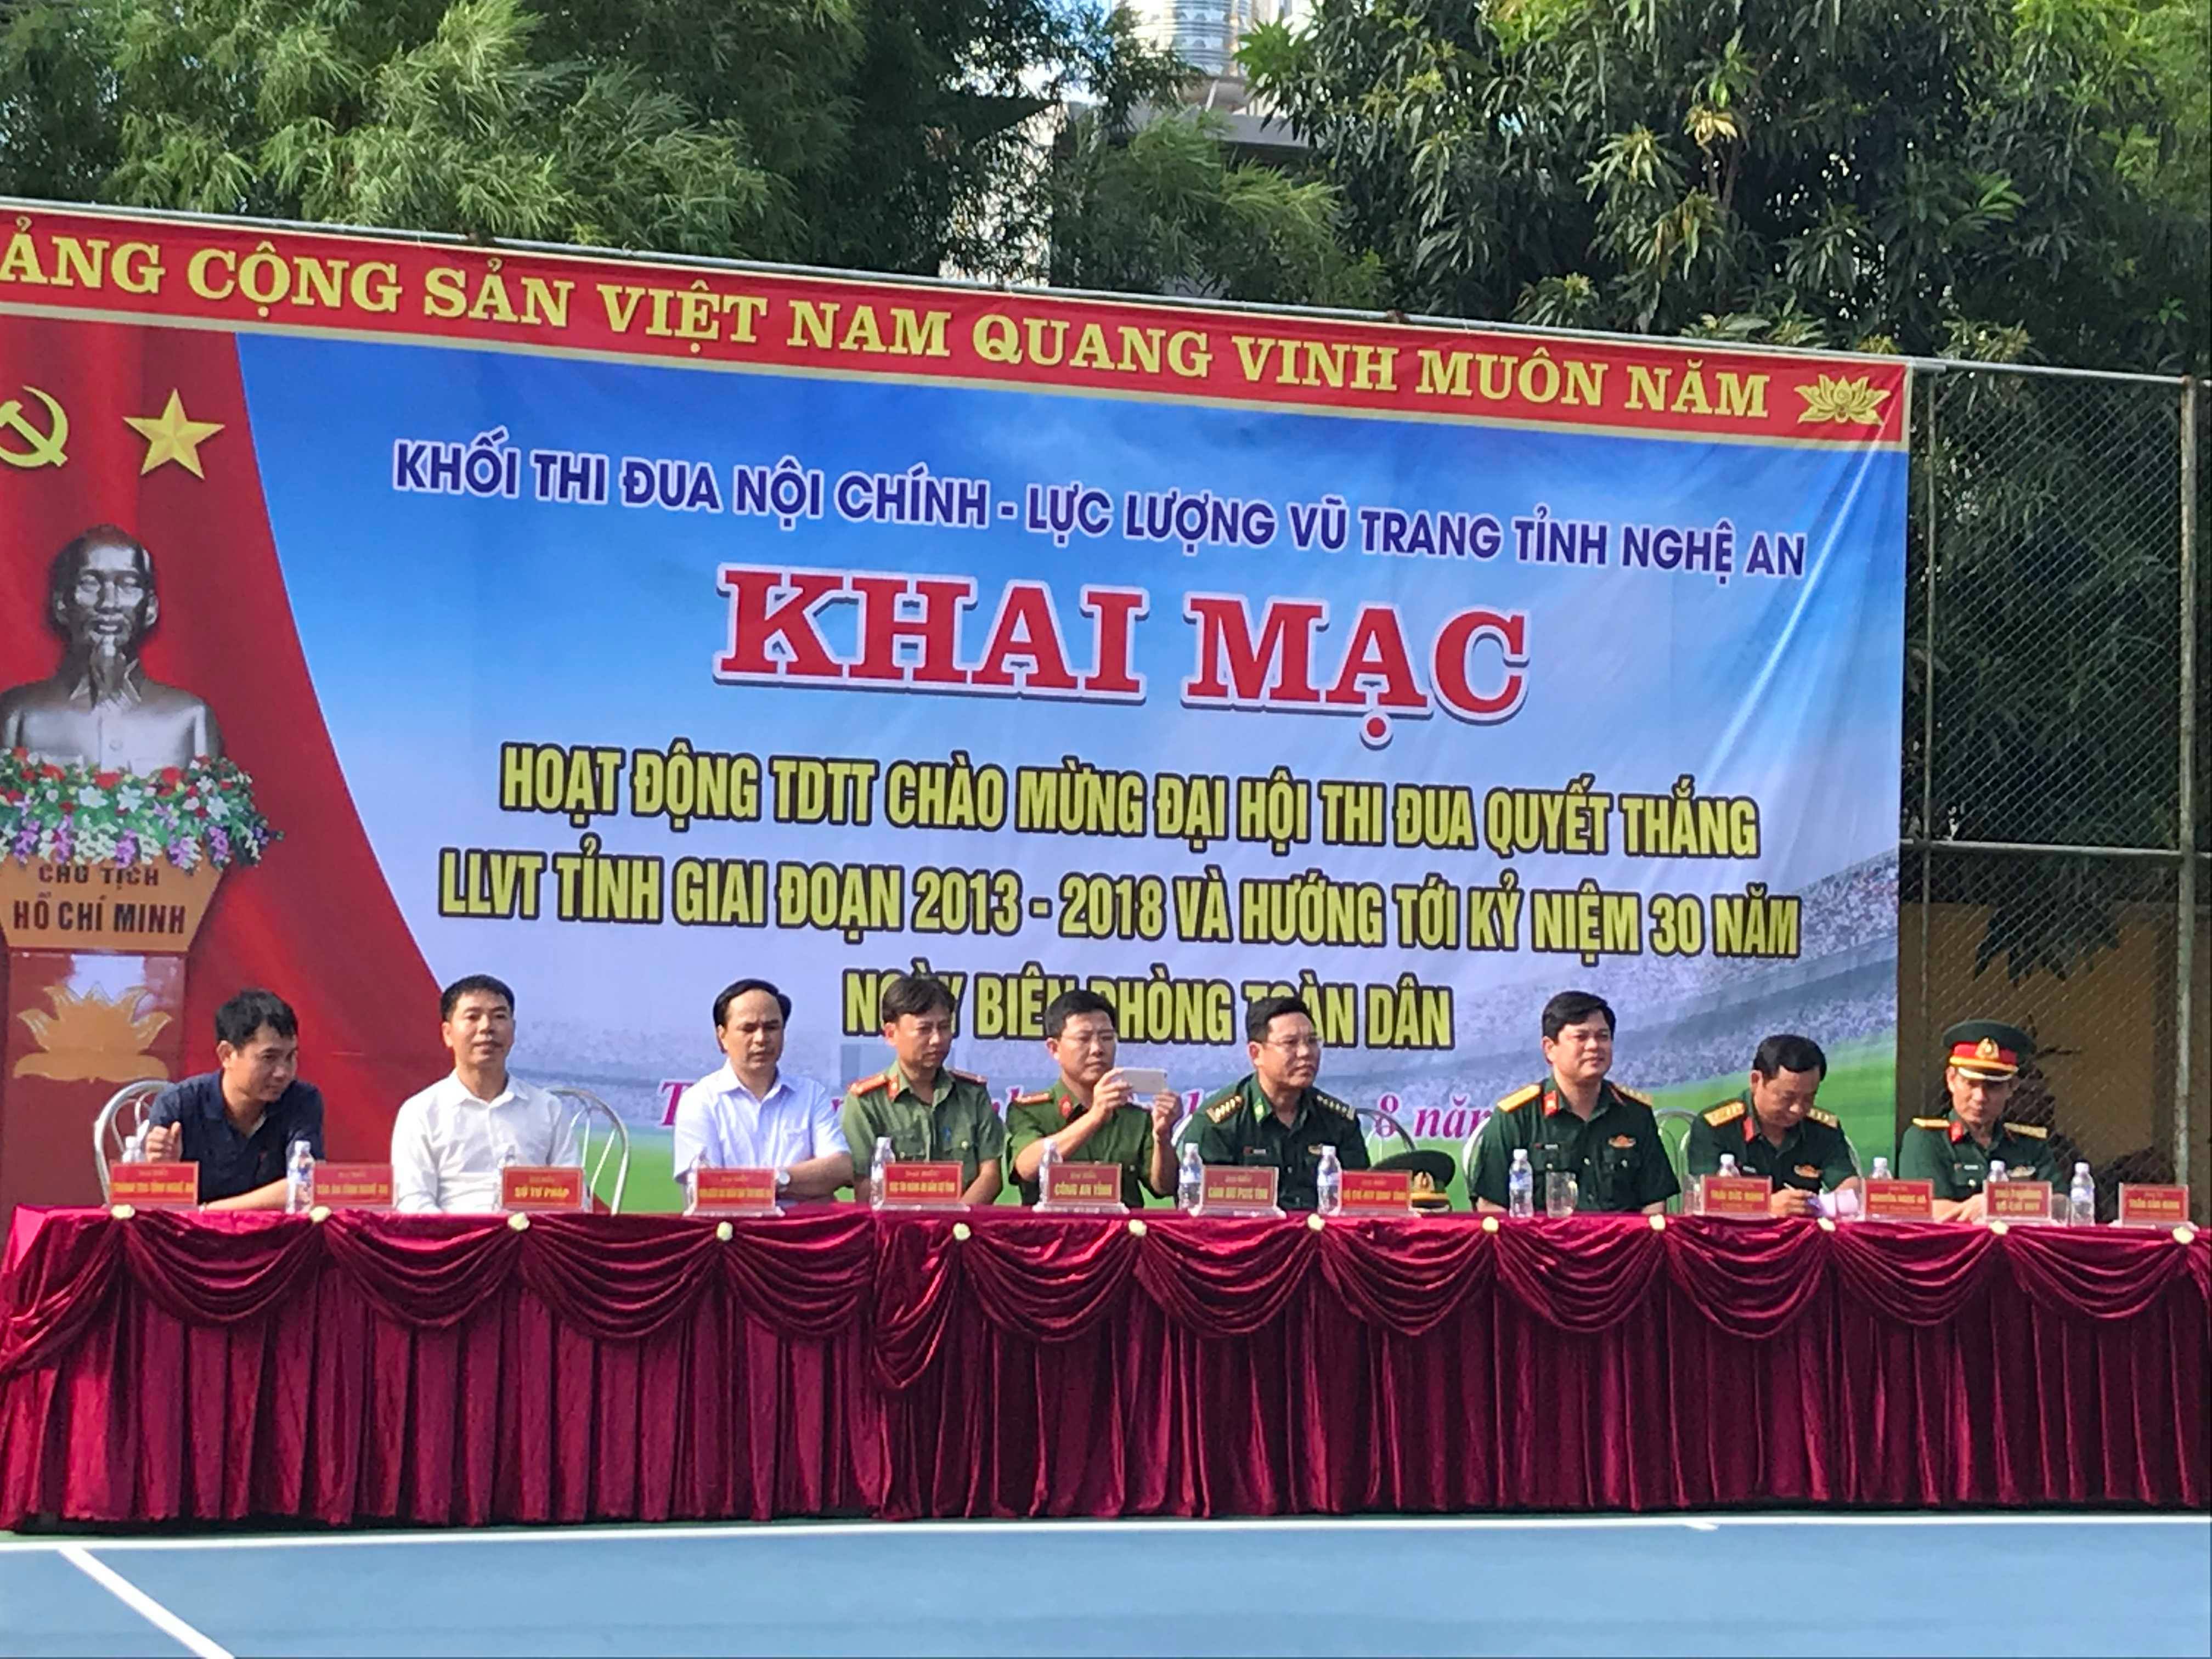 Cục Thi hành án dân sự tỉnh Nghệ An tham gia giải thể thao khối nội chính và lực lượng vũ trang tỉnh Nghệ An